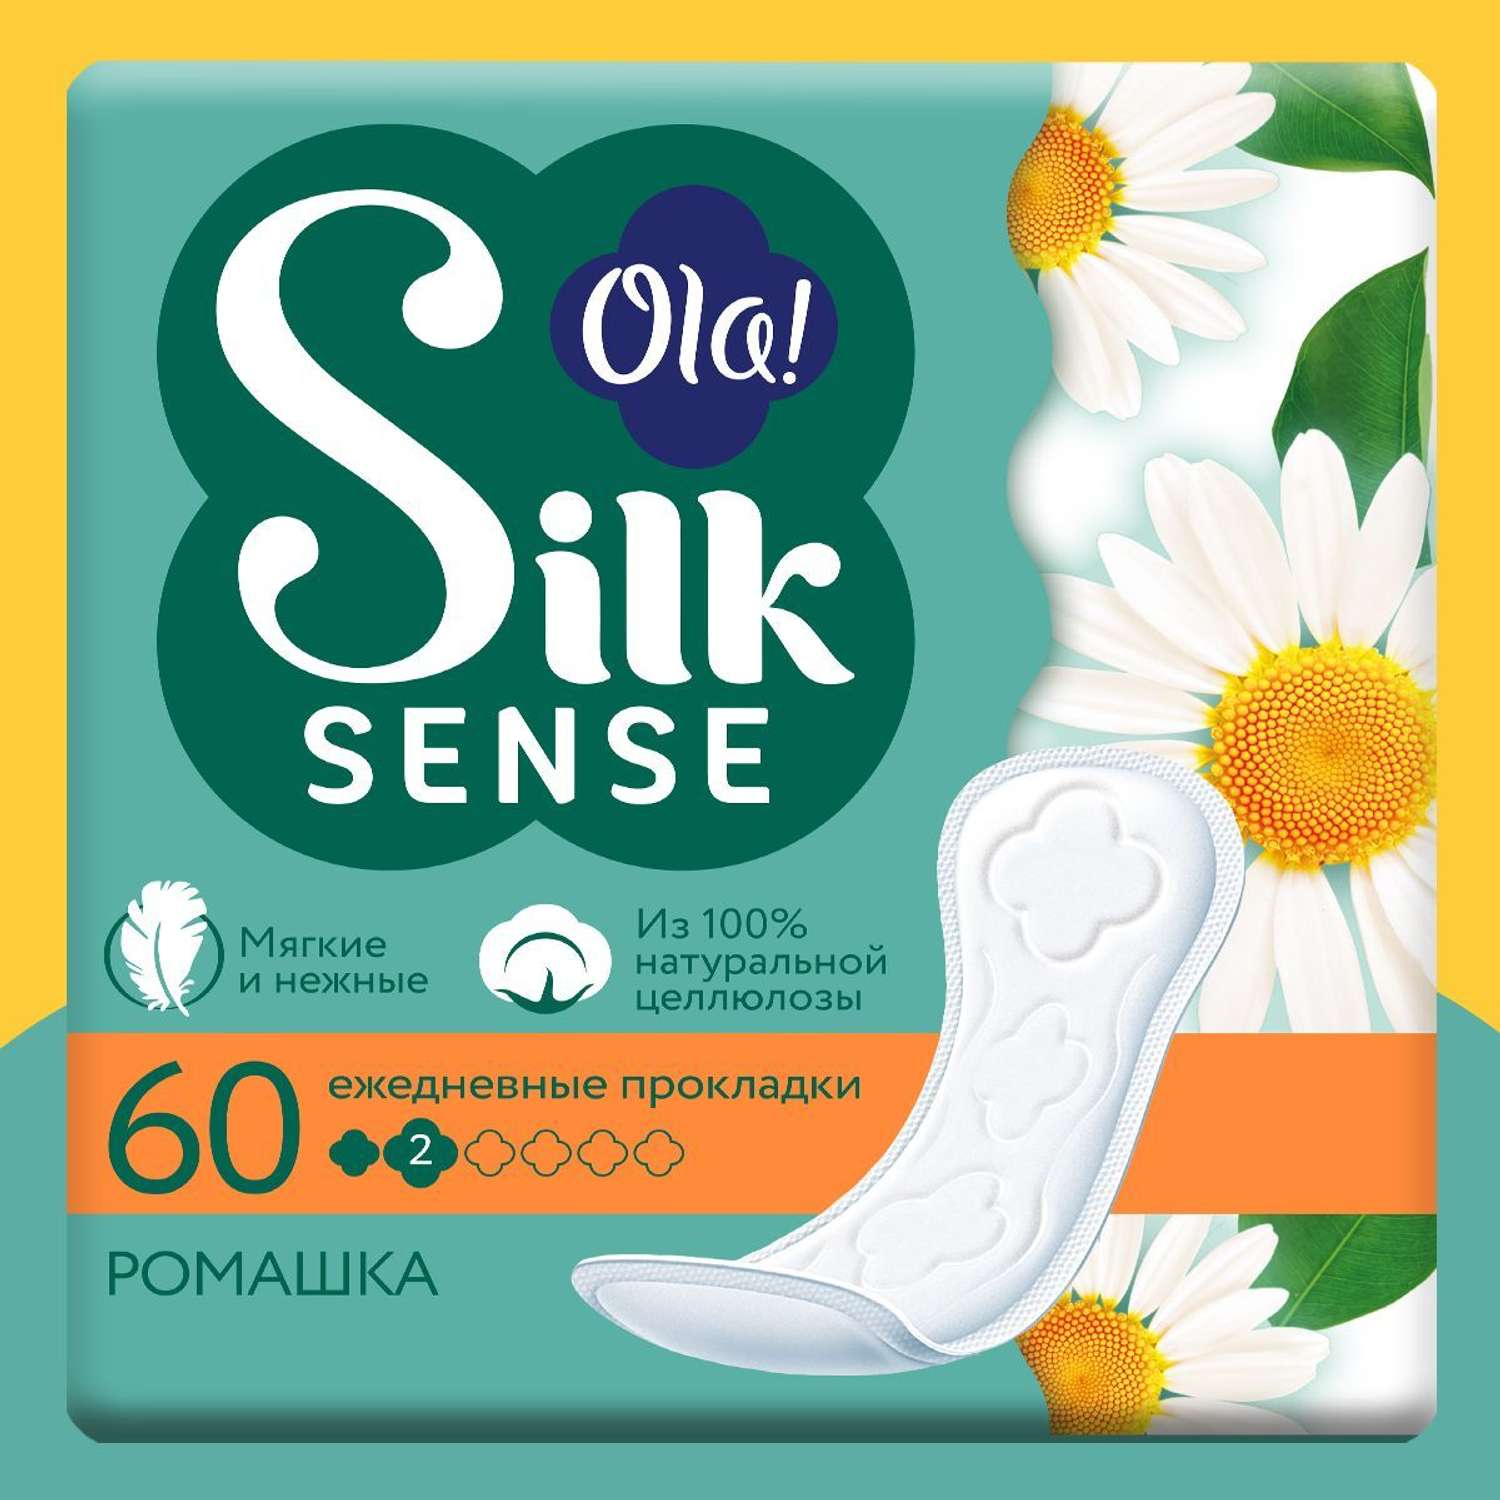 Ежедневные прокладки Ola! Silk Sense мягкие аромат Ромашка 60 шт - фото 1